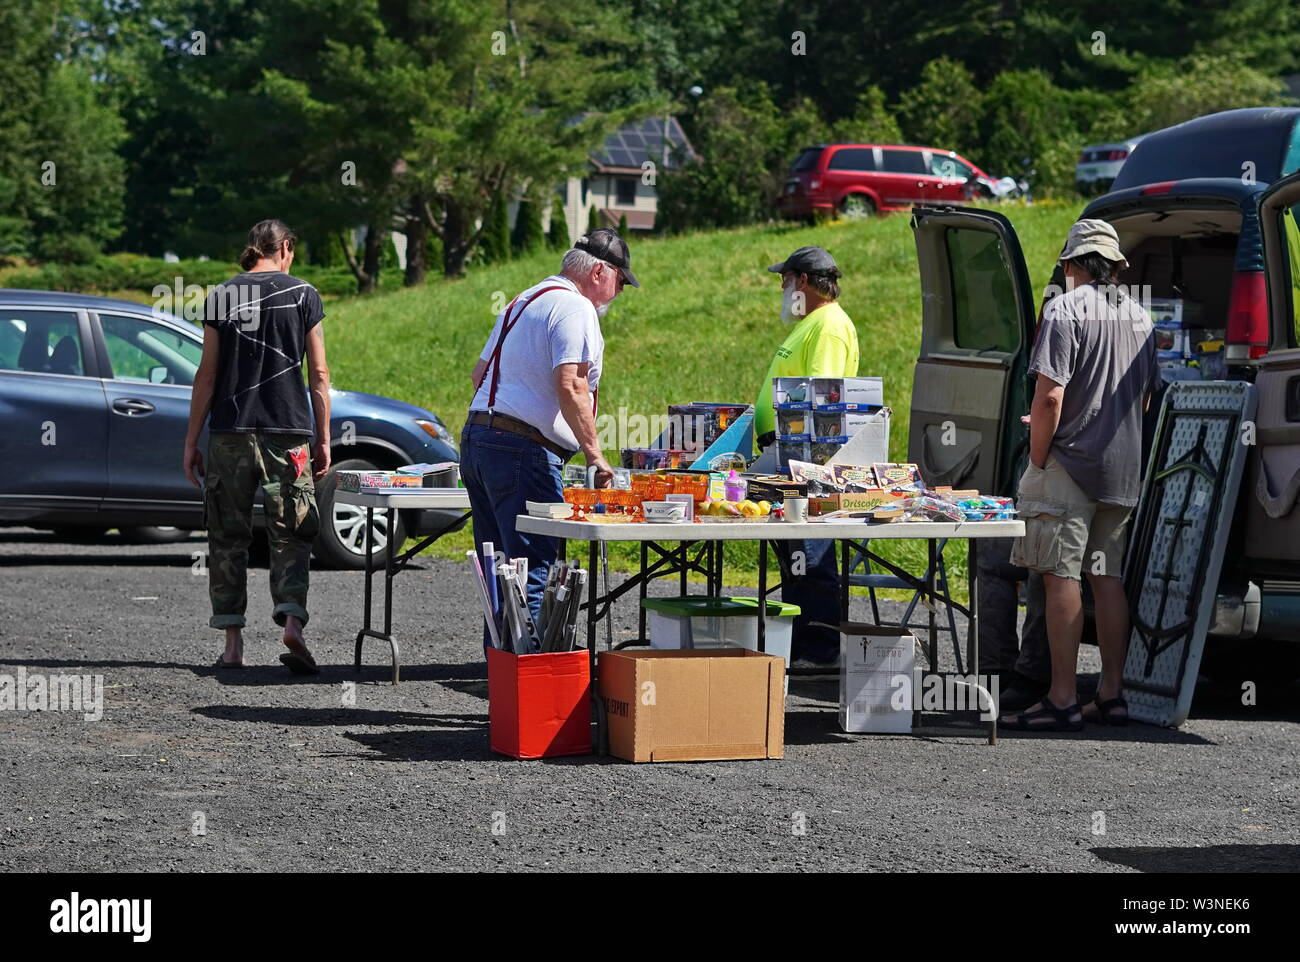 Durham, CT / USA - Junio 24, 2019: ancianos de compras alrededor durante un mercadillo Foto de stock